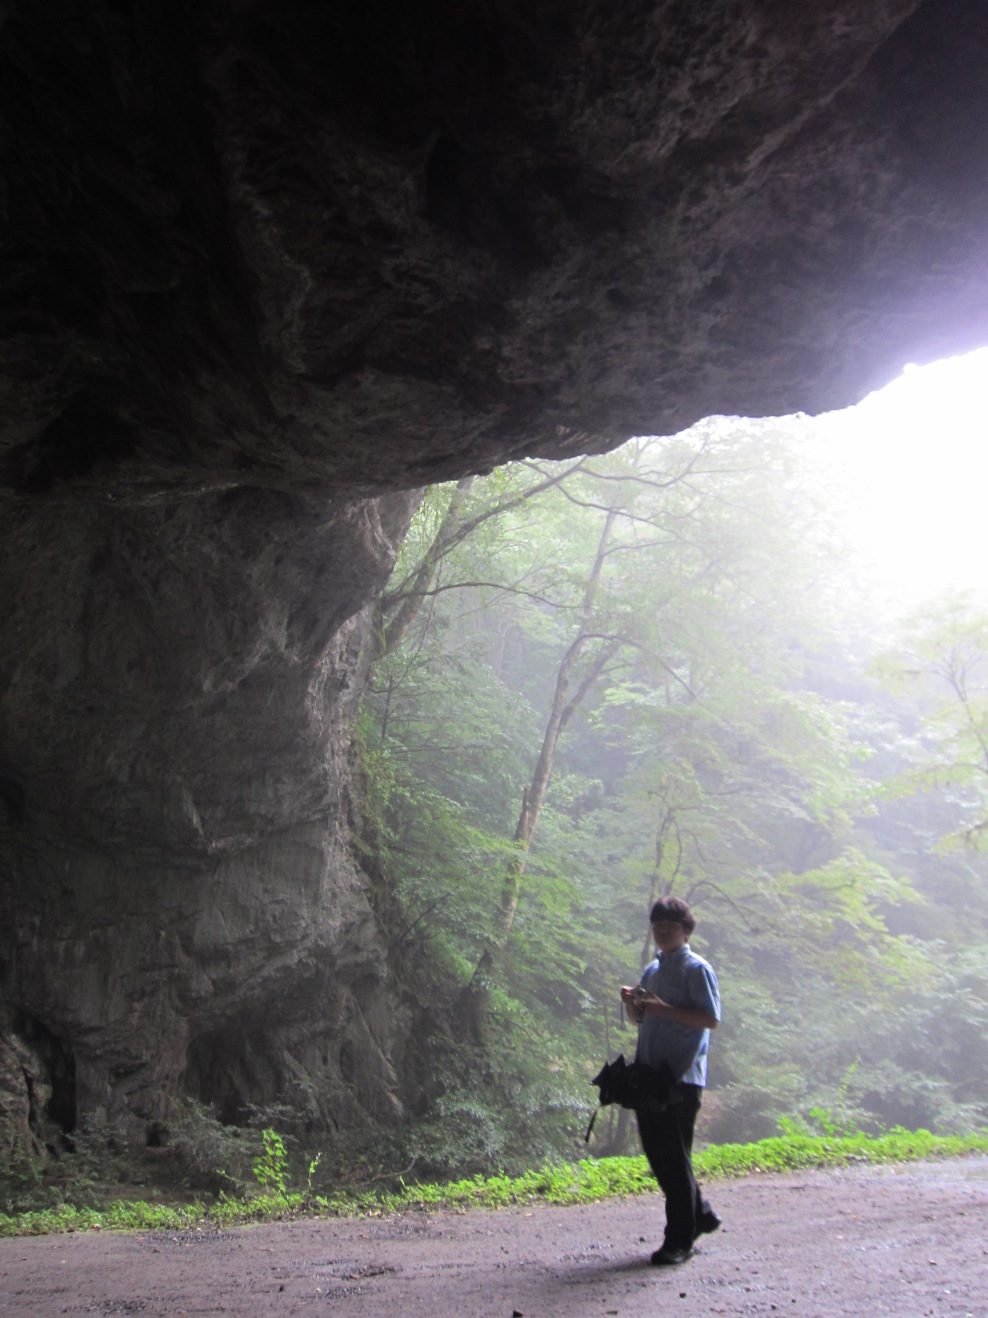 広島県帝釈峡の石灰岩地質地形の見学・観察_天然橋